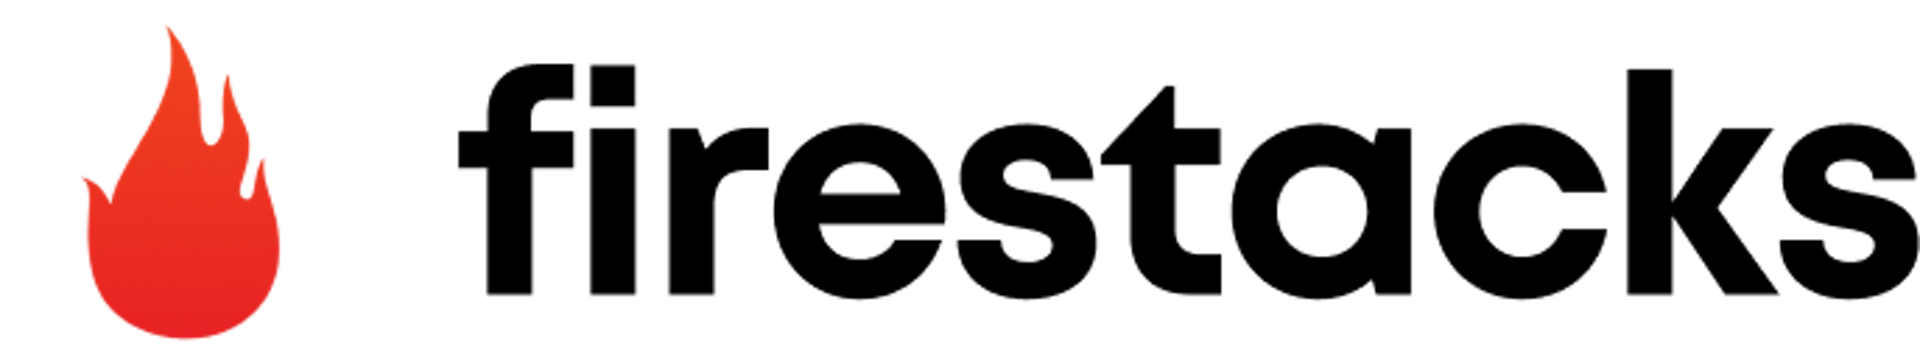 firestacks logo